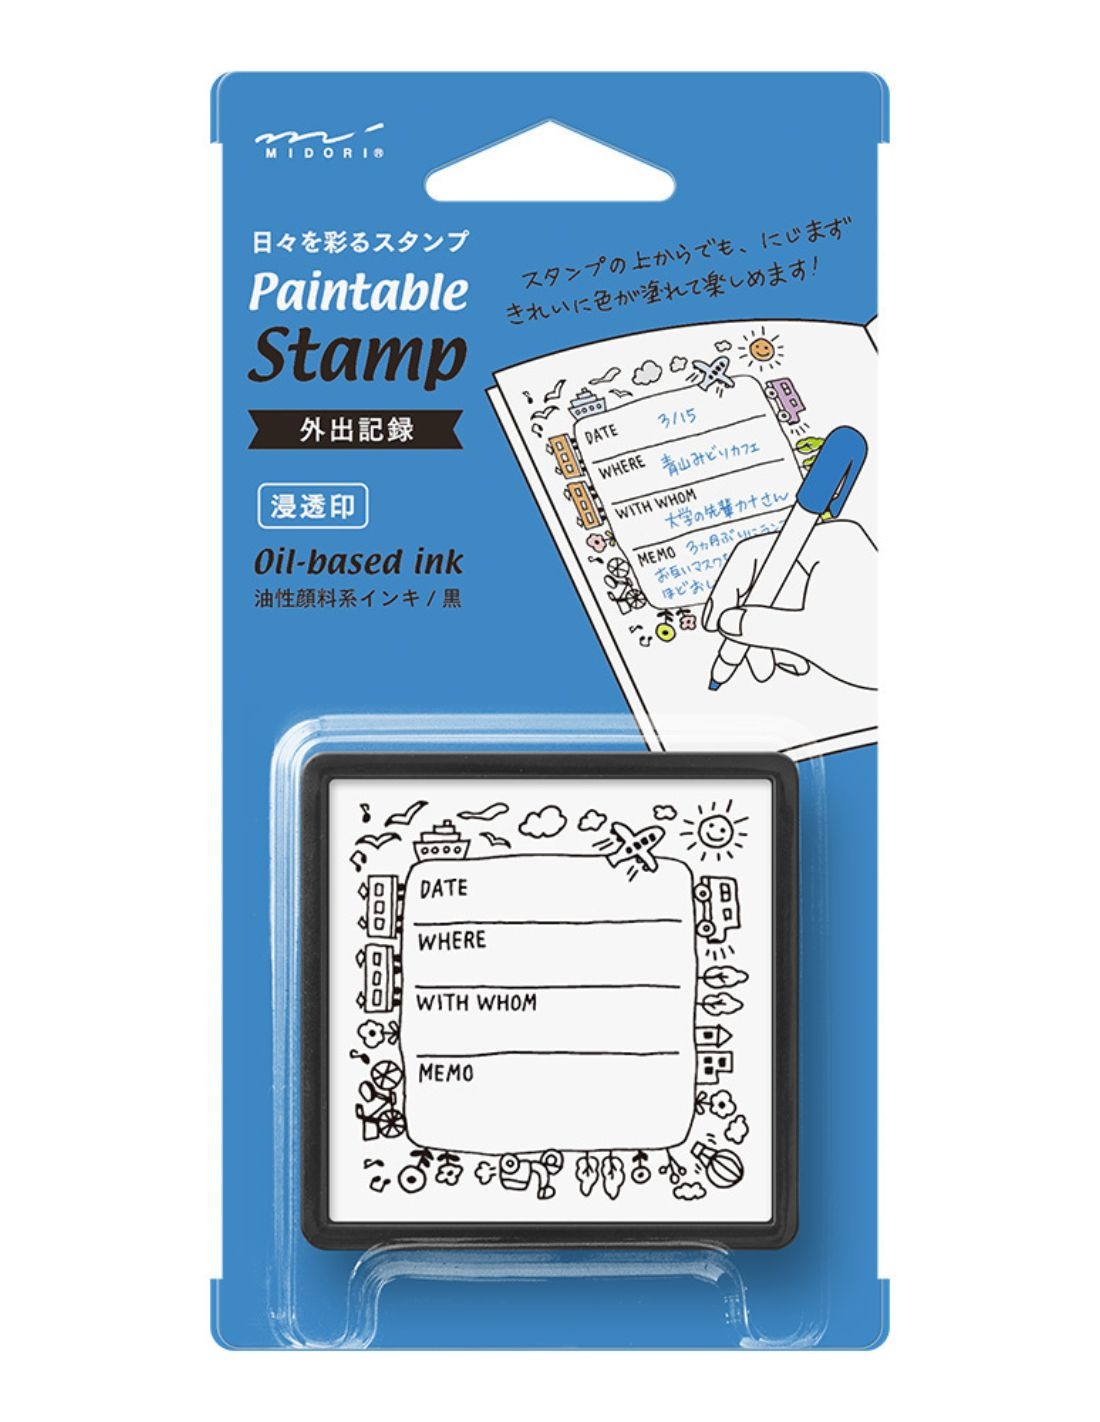 Tampon pré-encré Paintable Stamp - Événement - Midori